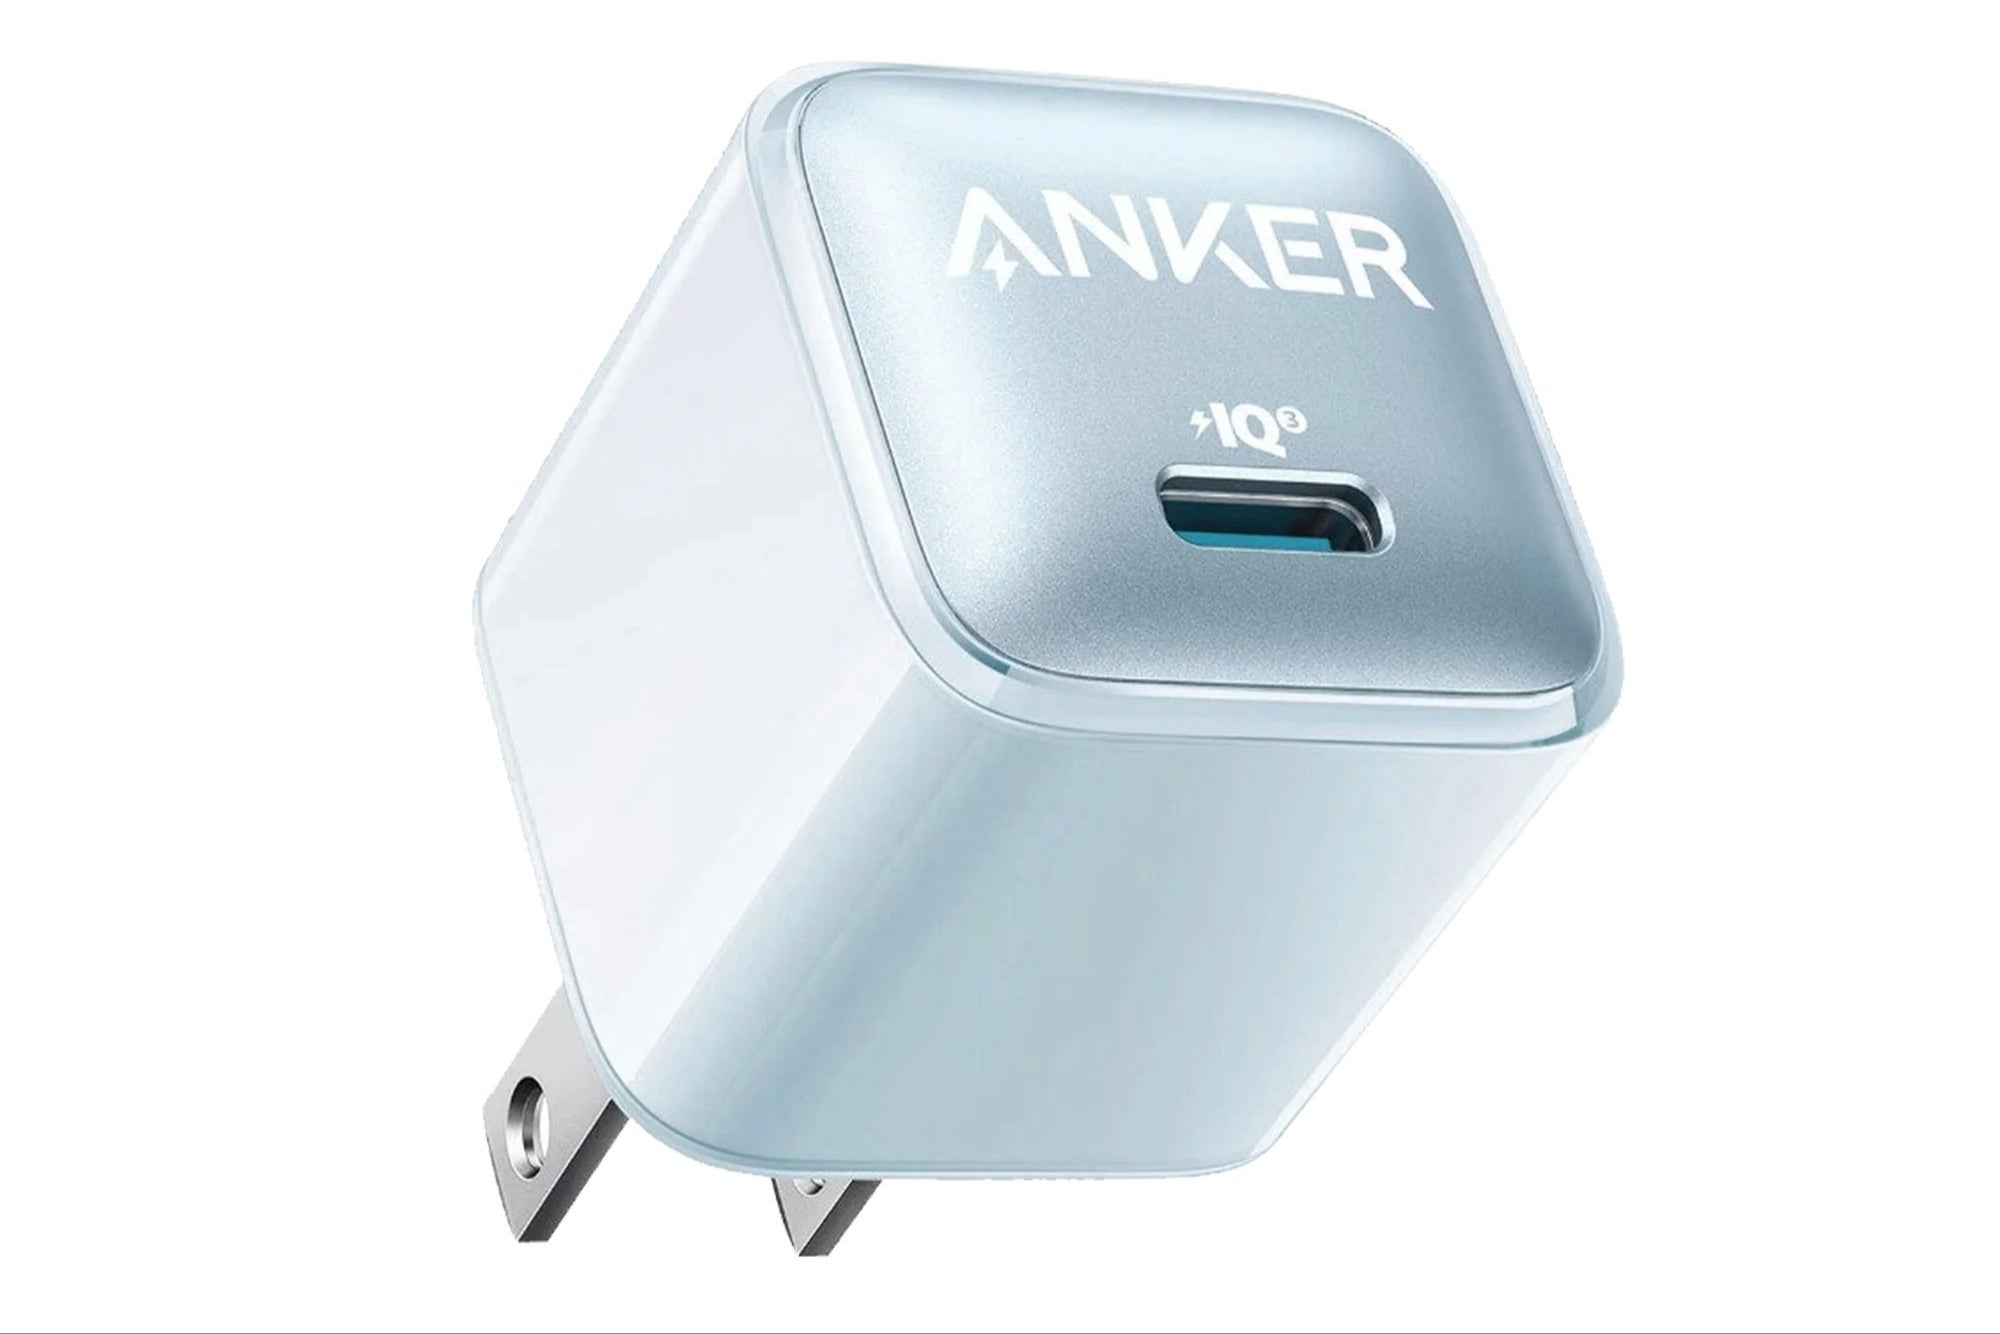 Anker 511 Nano şarj cihazı (Resim Kredisi – Anker) - Durun, Ikea, Apple ve Samsung'un pahalı güç adaptörlerinin fiyatını mı düşürüyor?